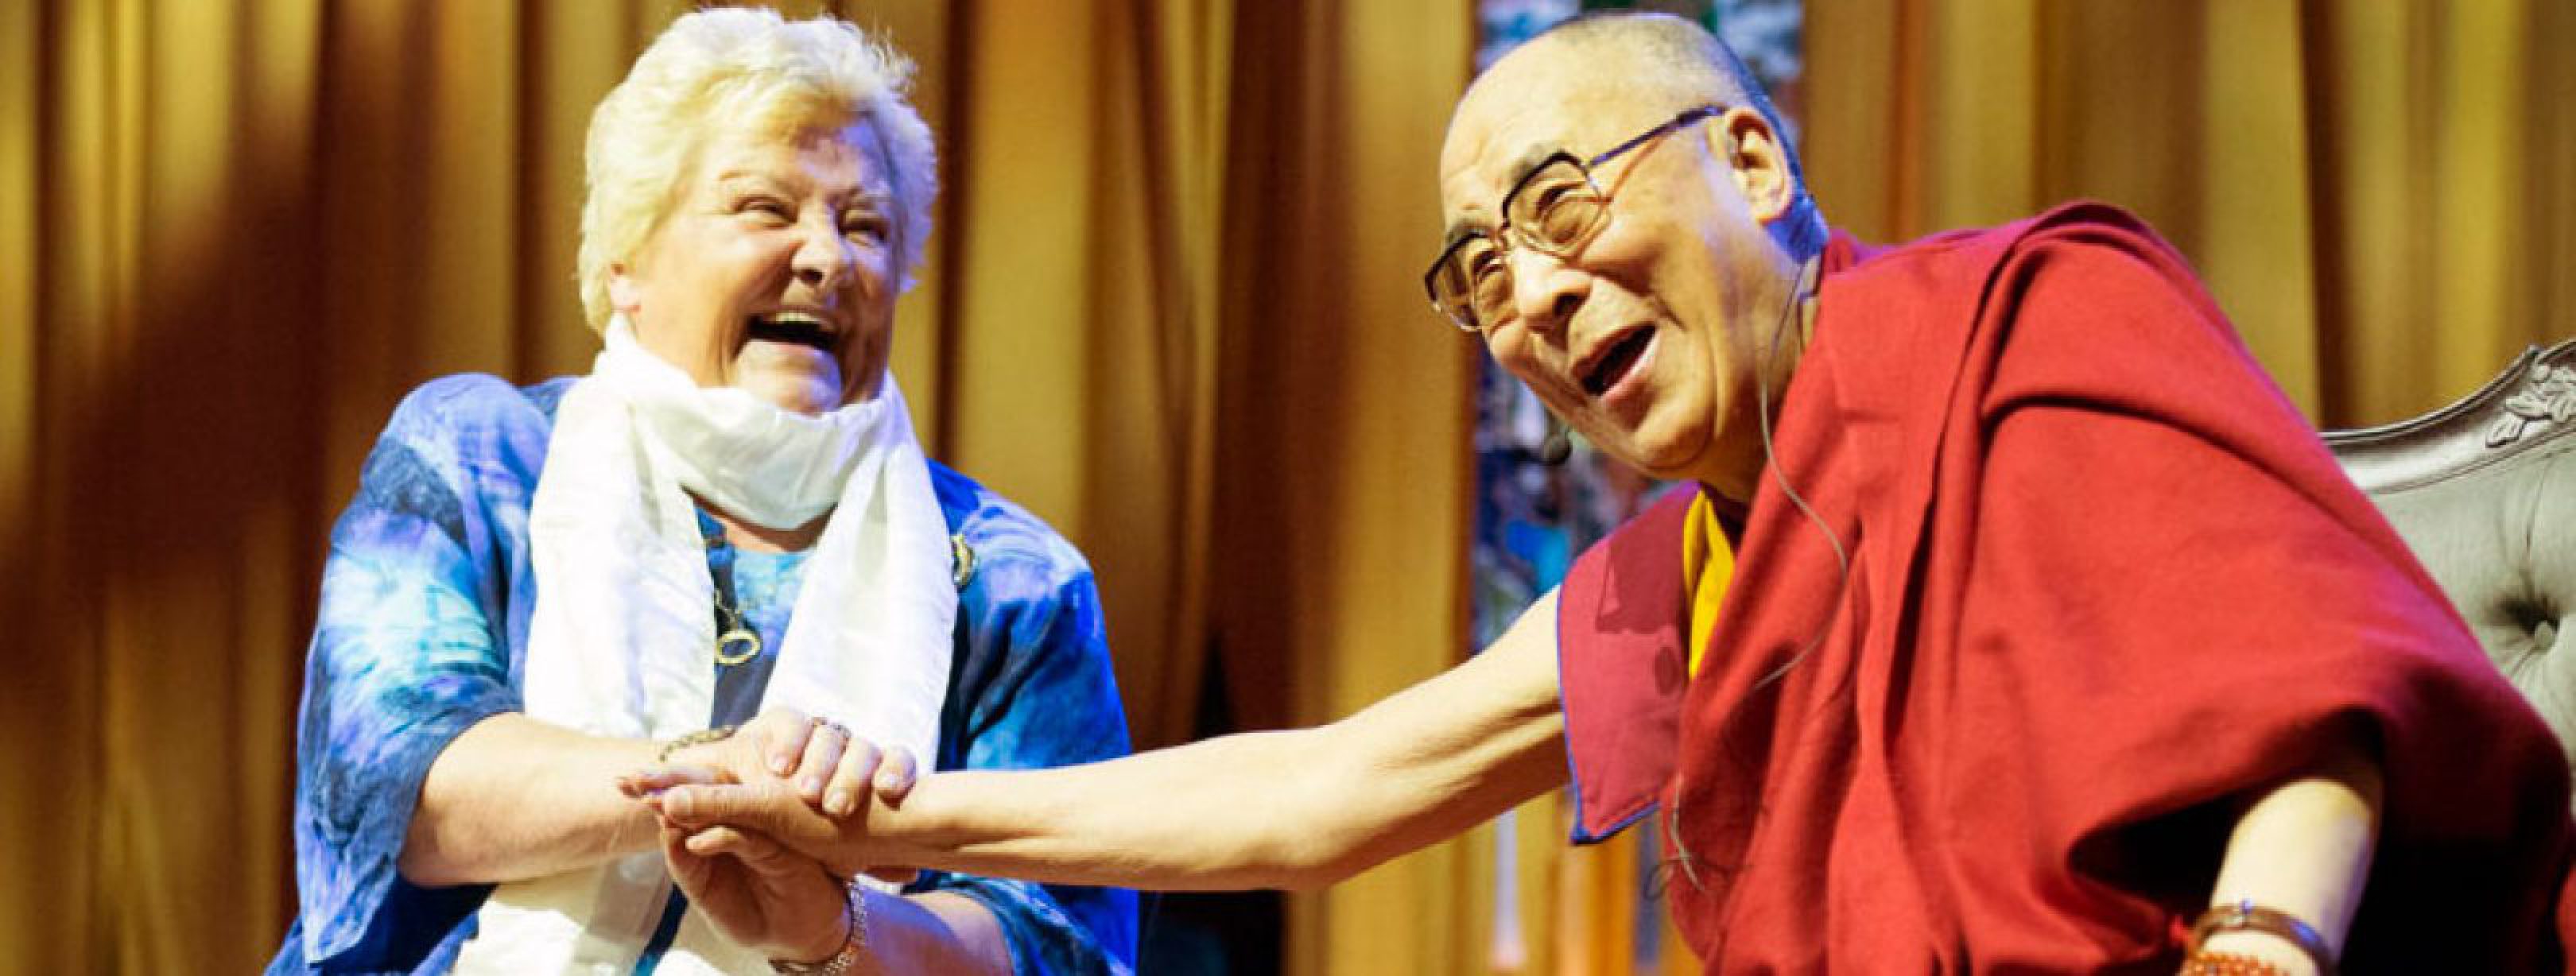 Erica Terpstra en dalai lama